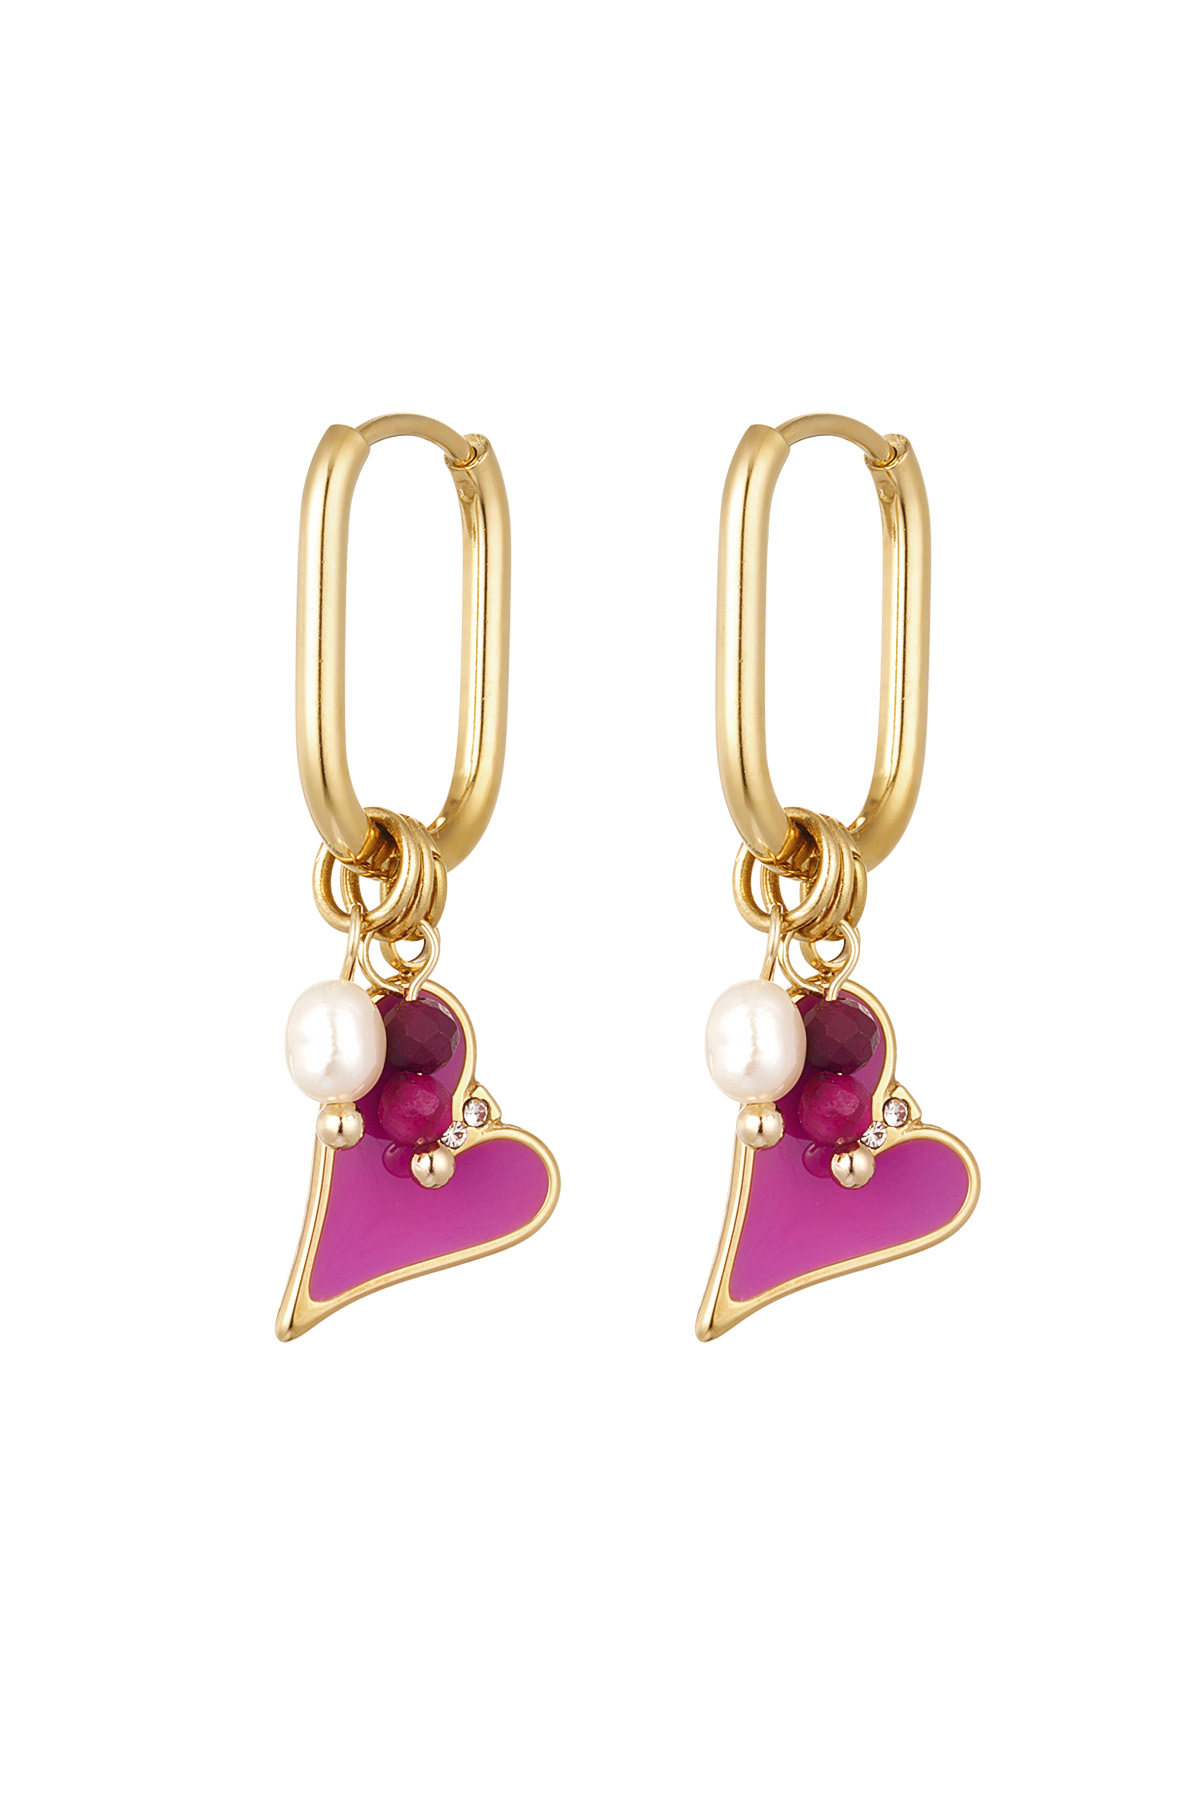 Orecchini cuore colorato con perla - oro/rosa h5 